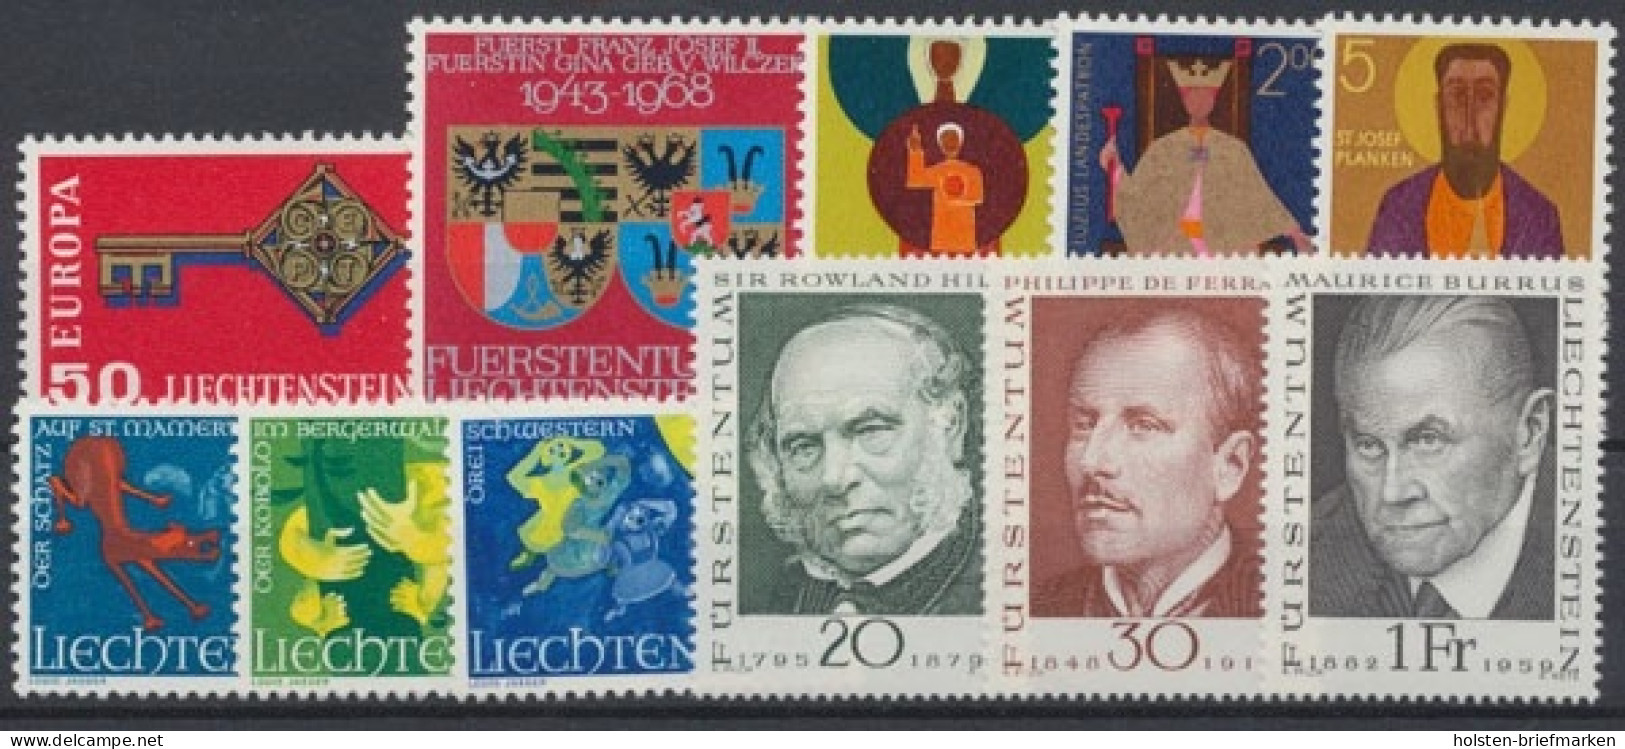 Liechtenstein, MiNr. 495-505, Jahrgang 1968, Postfrisch - Años Completos